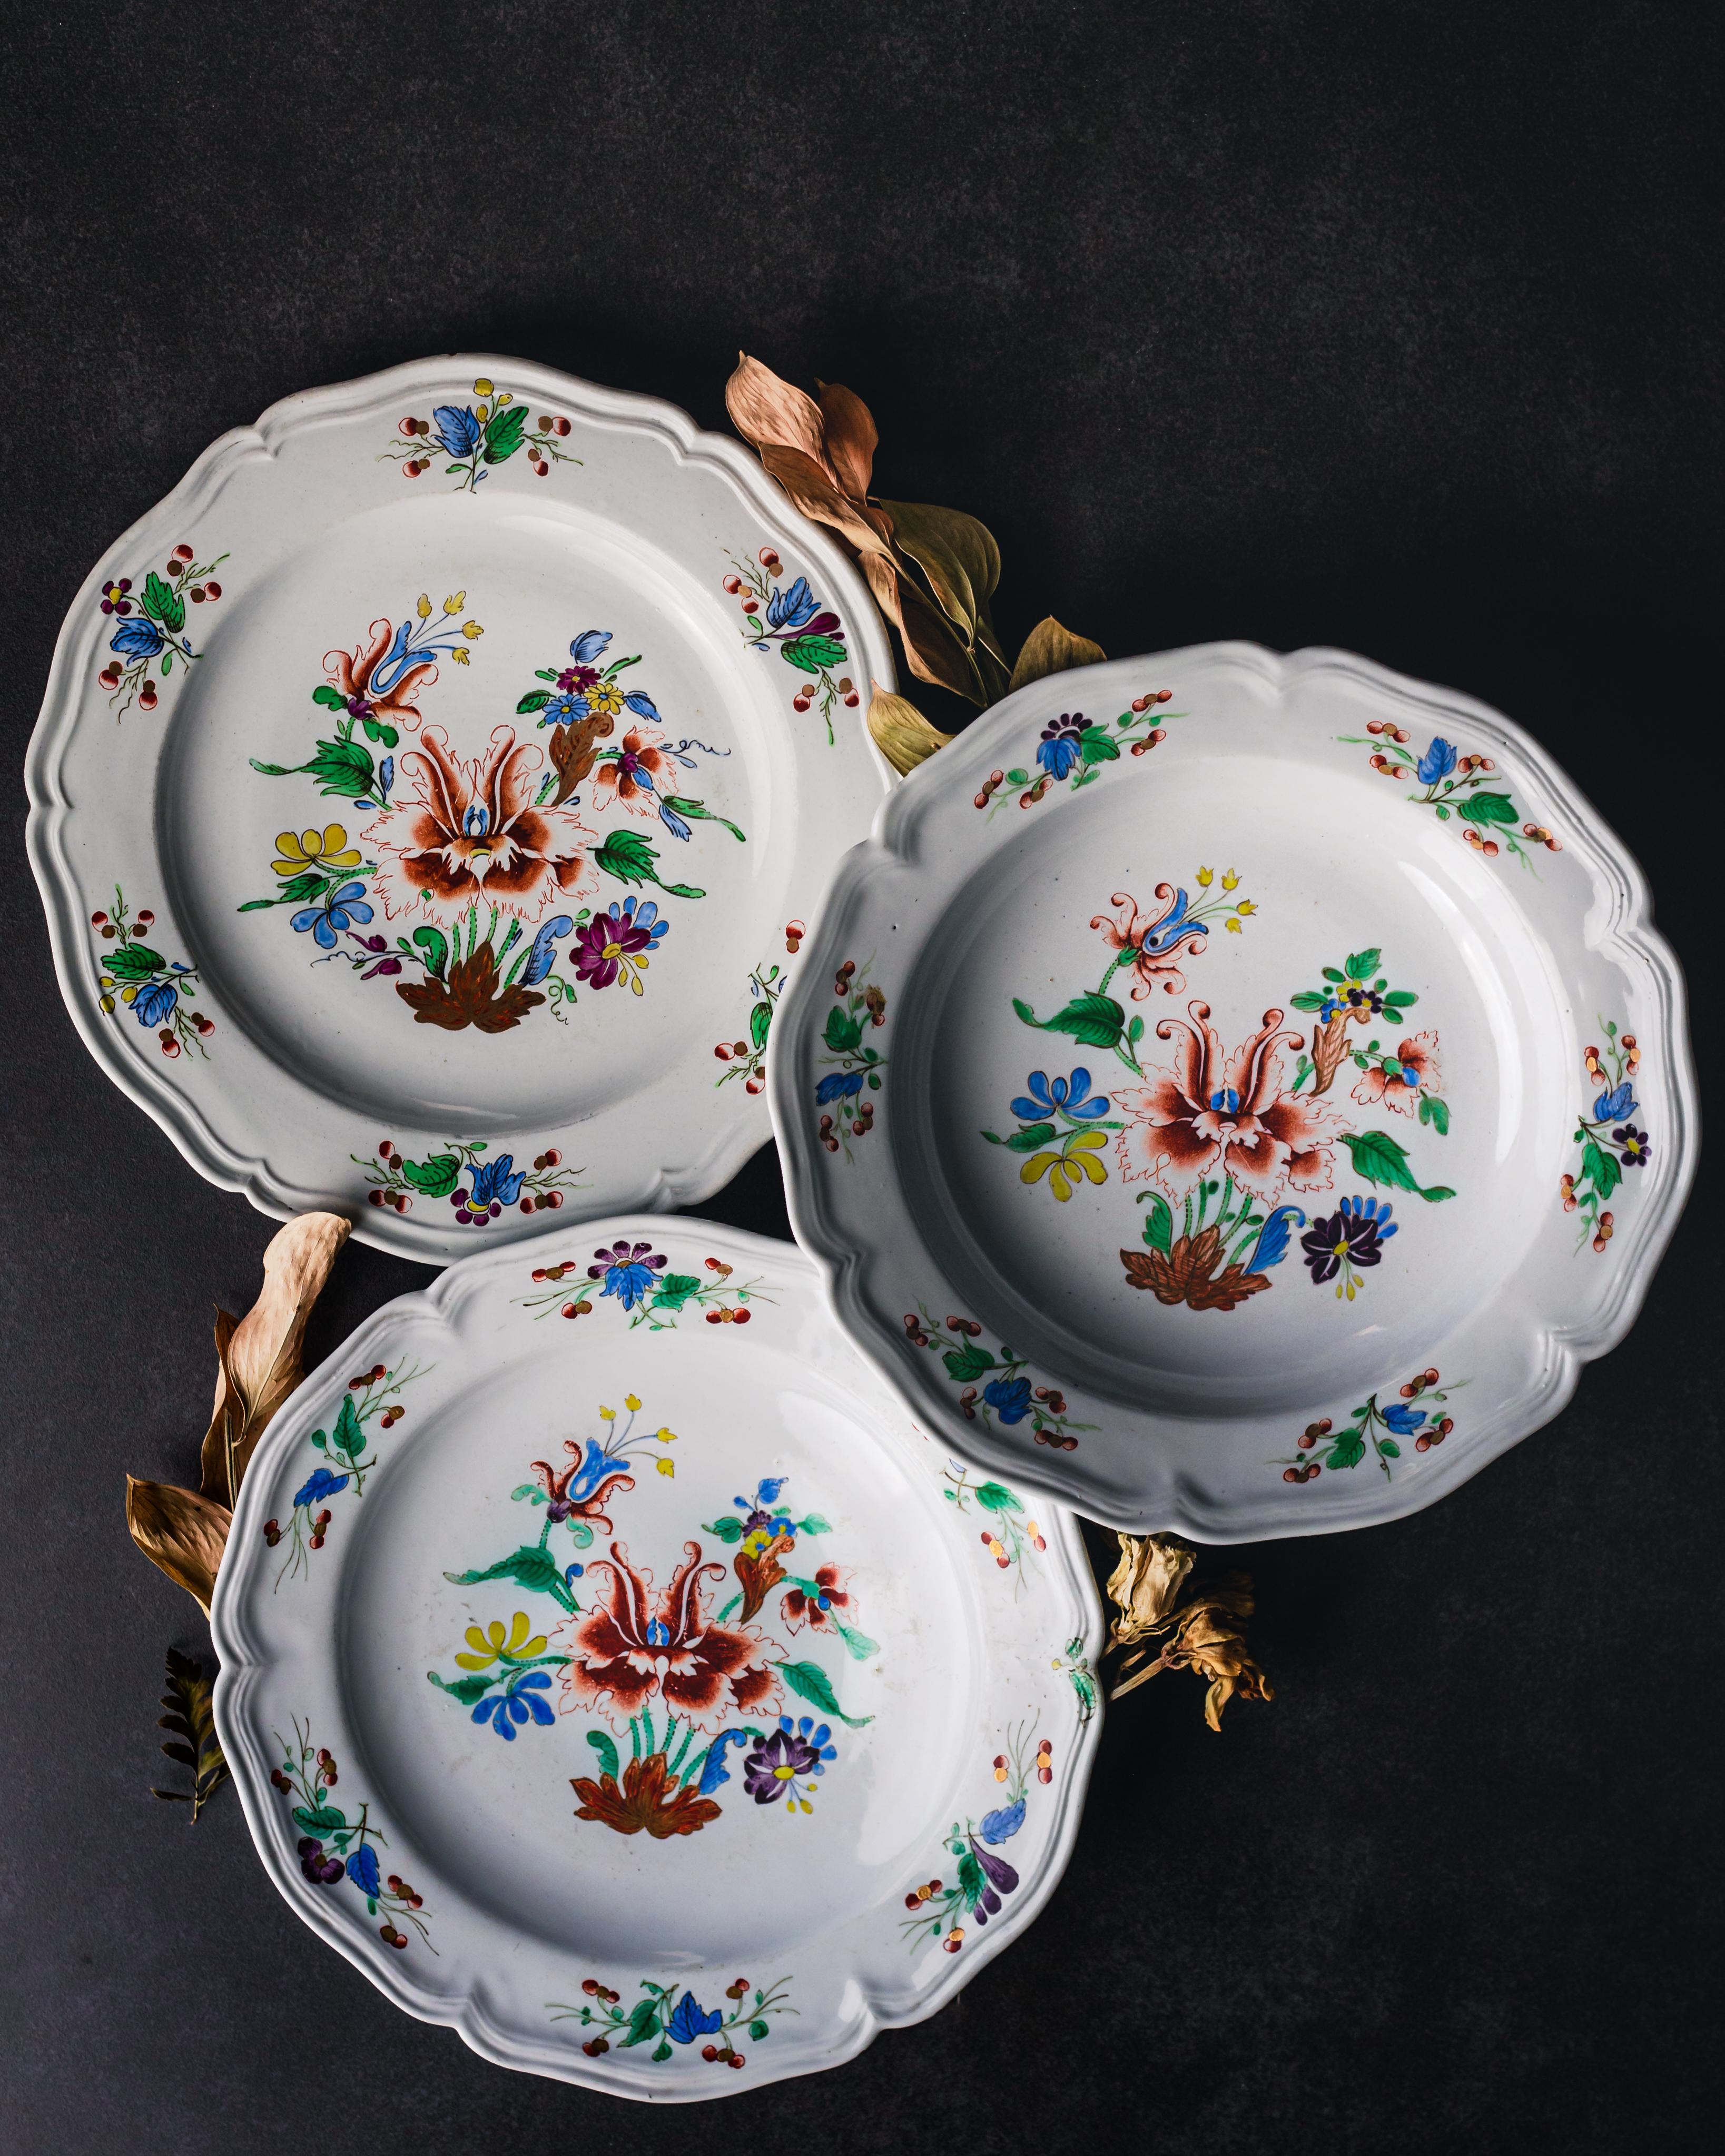 Tafelservice mit sechs Tellern und sechs Suppentellern aus der Porzellanmanufaktur Doccia, um 1750.

In Italien fand die erste Porzellanproduktion Europas statt: in Florenz zwischen 1575 und 1587 unter der Schirmherrschaft von Francesco I. de'